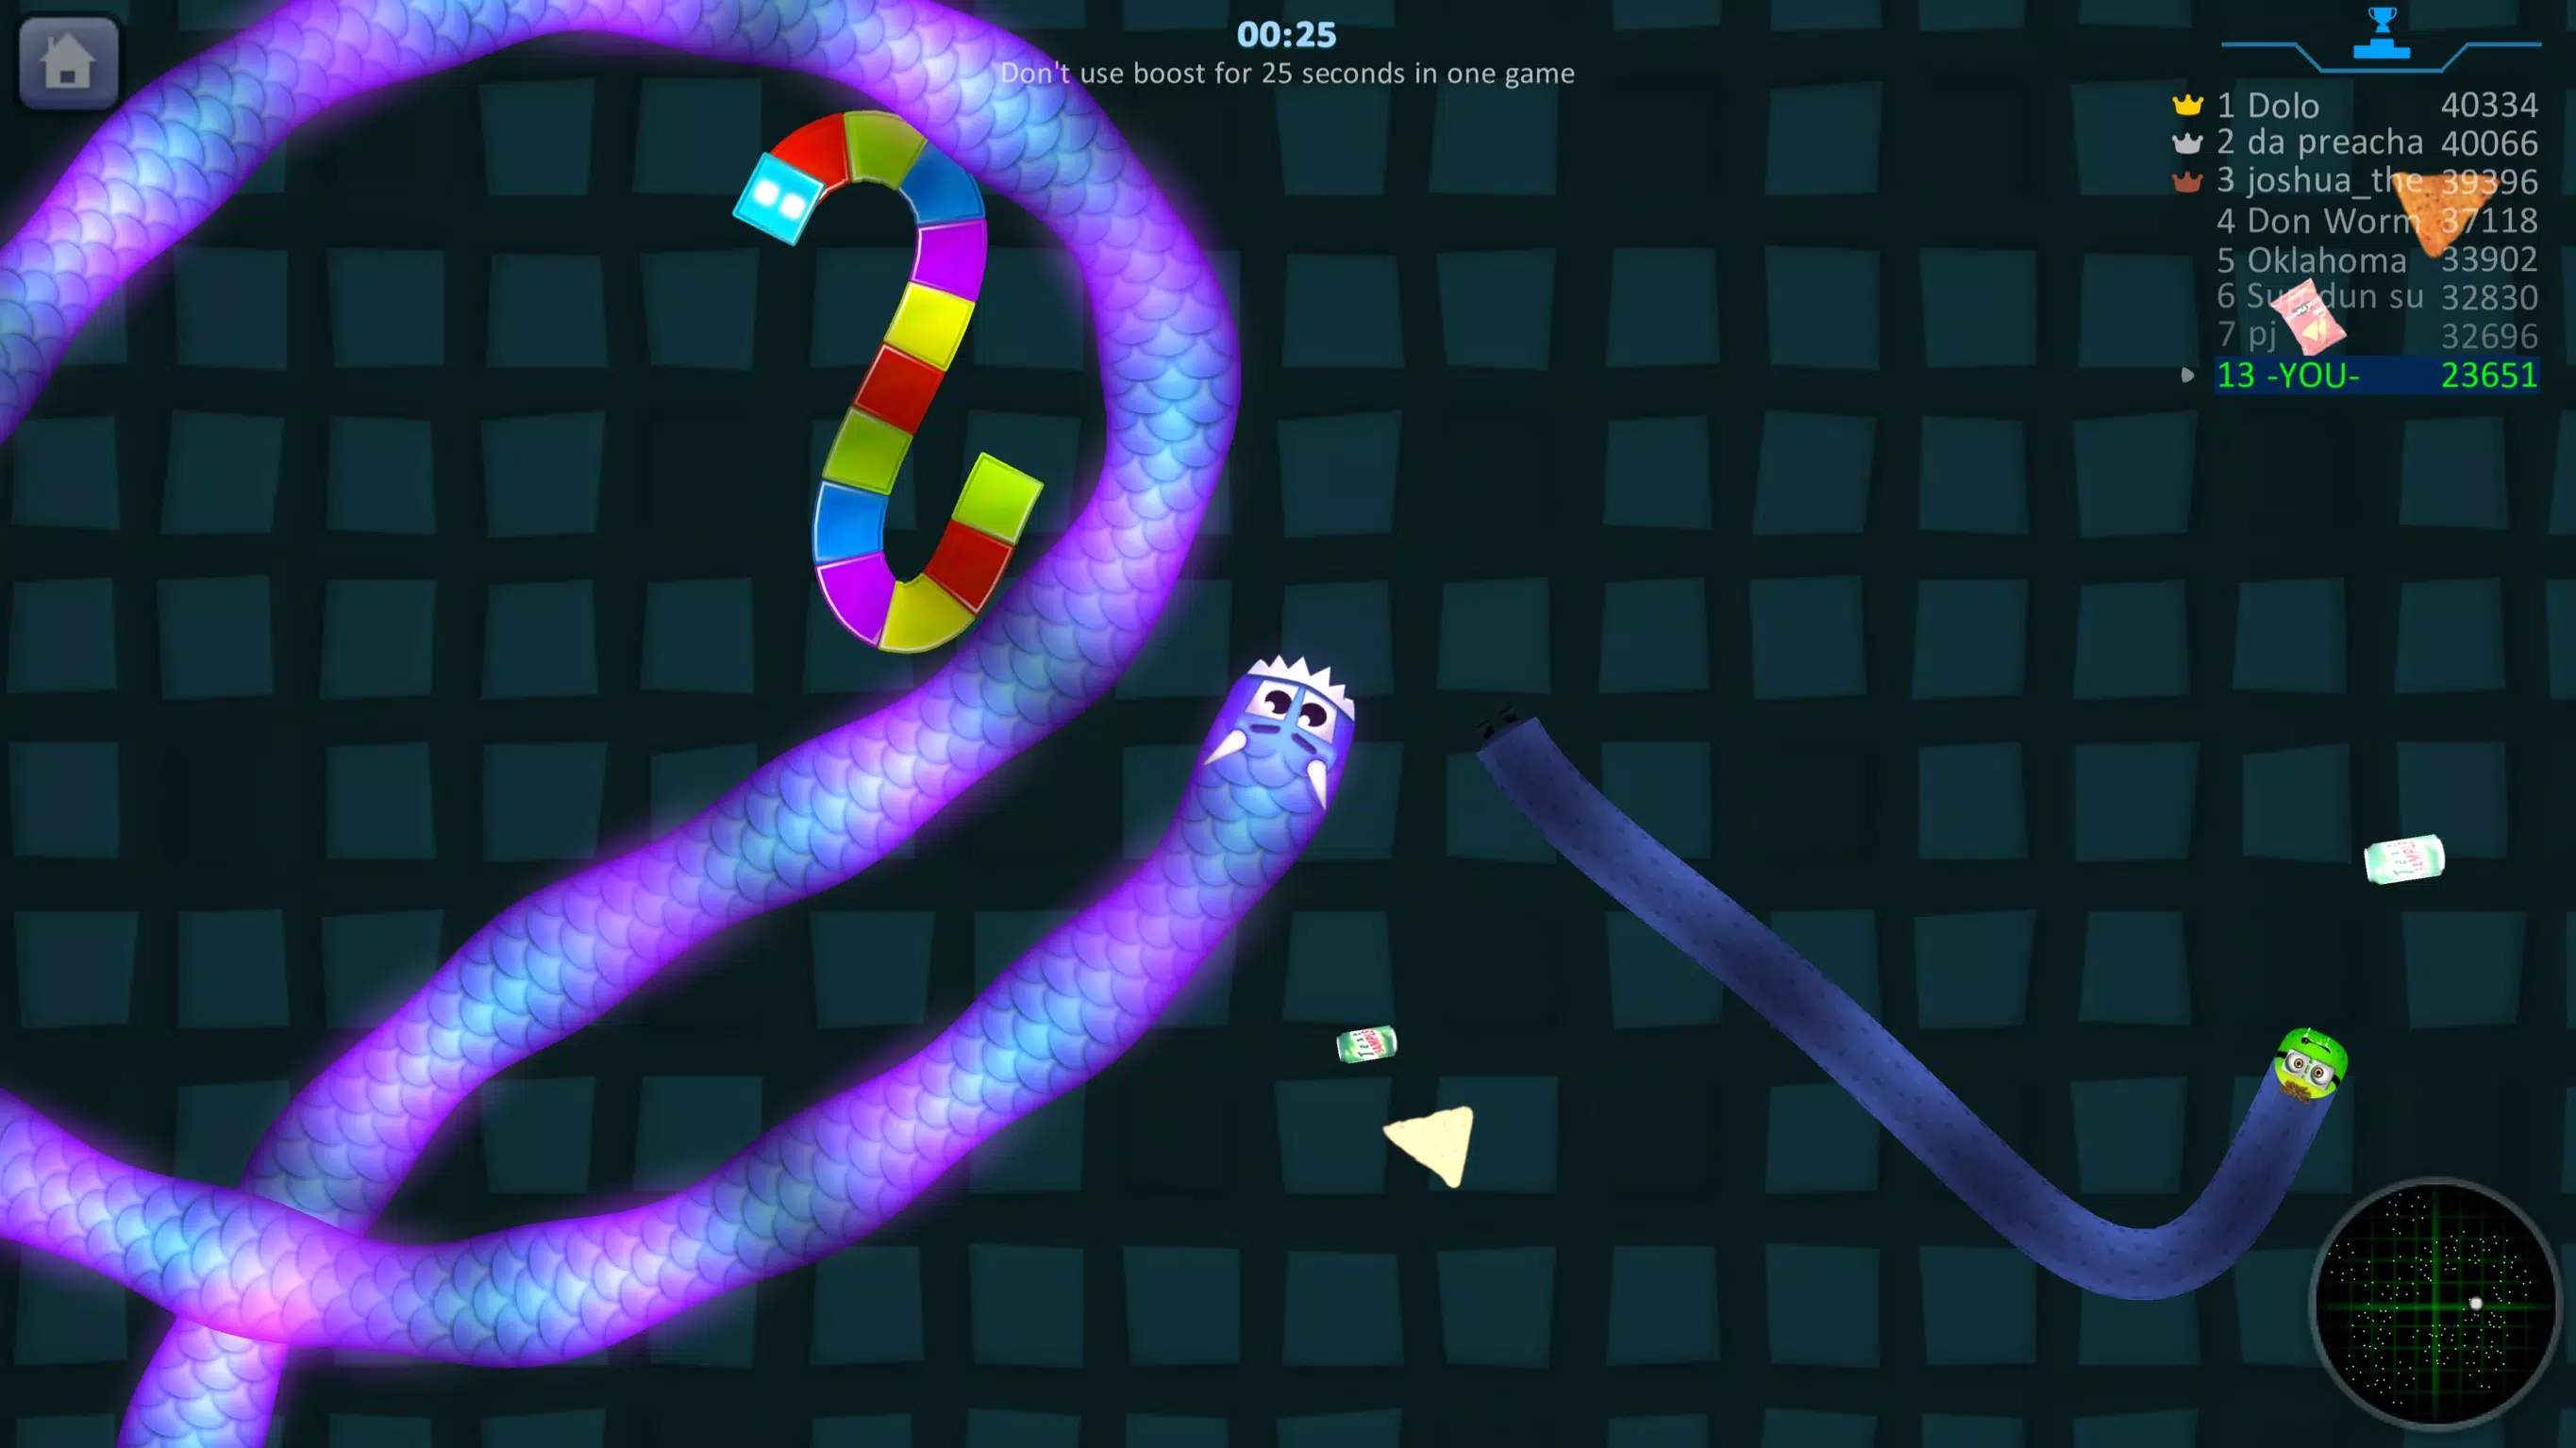 Slink.io - Jogos de Cobra – Apps no Google Play